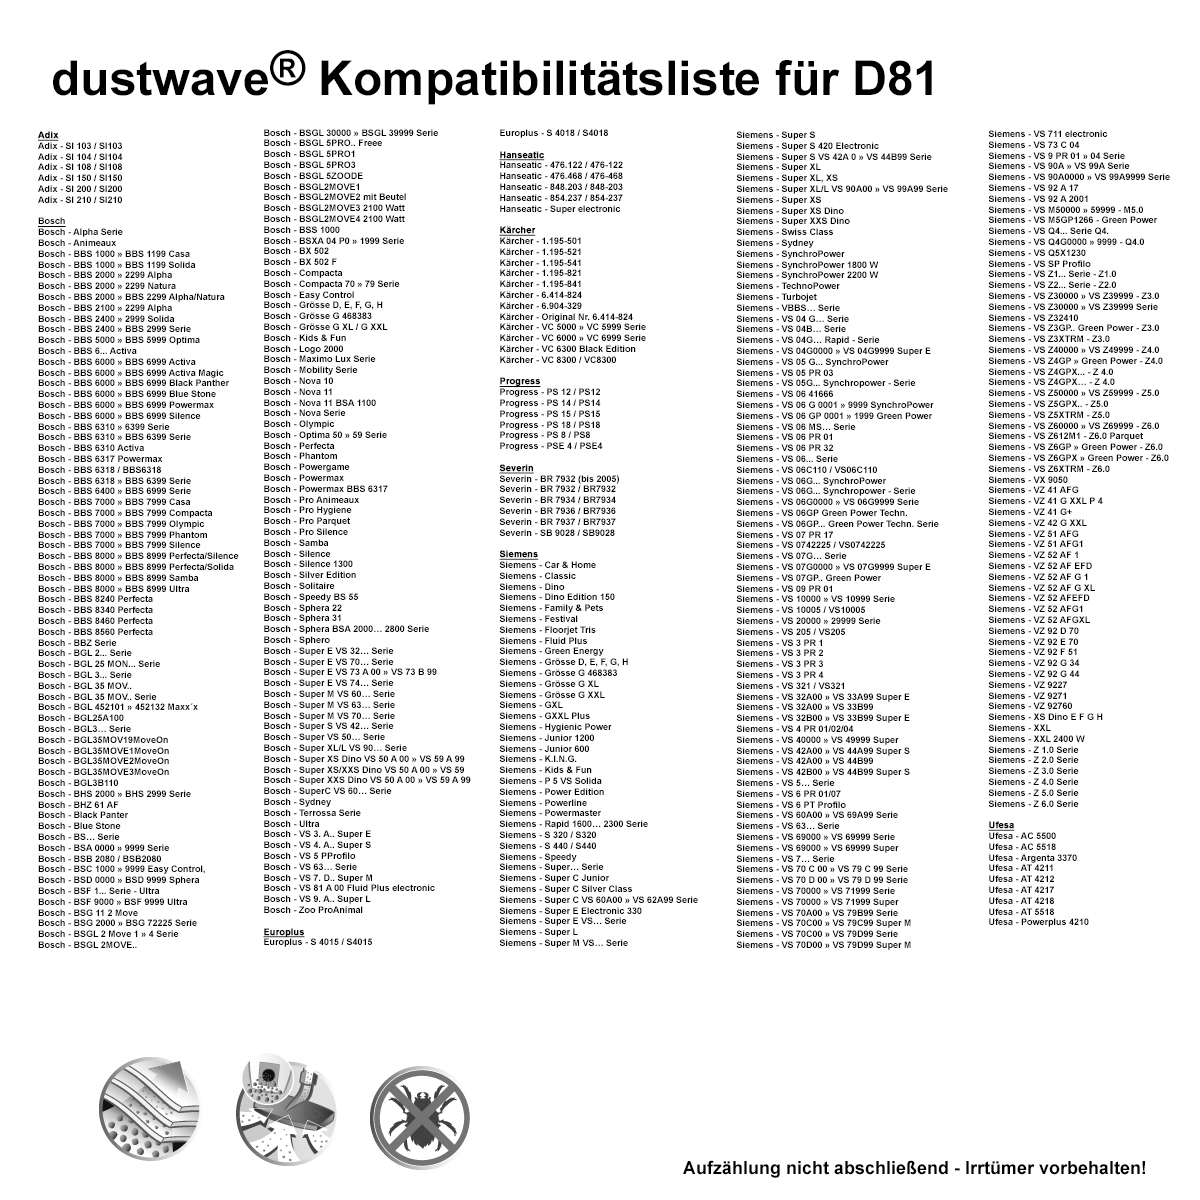 Dustwave® 10 Staubsaugerbeutel für AquaPur Adix - SI150, BASE - BA 2000 - hocheffizient, mehrlagiges Mikrovlies mit Hygieneverschluss - Made in Germany